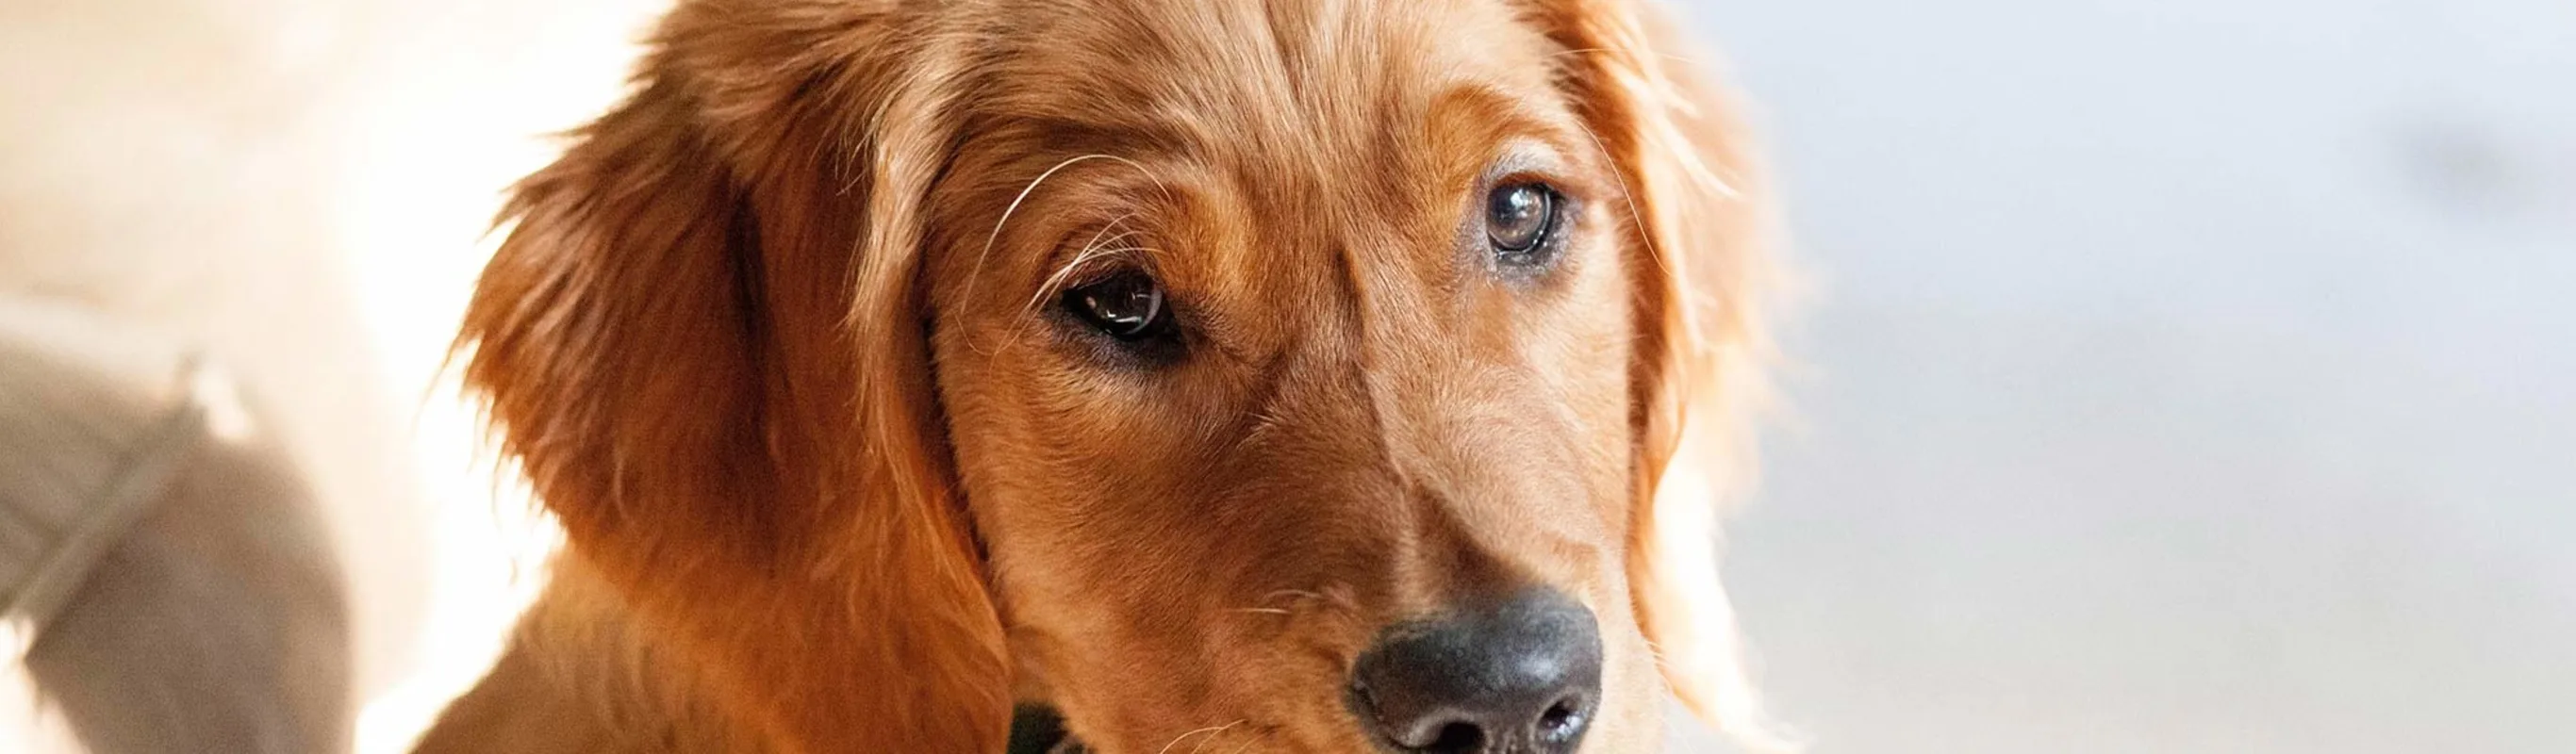 Golden dog looking over its shoulder